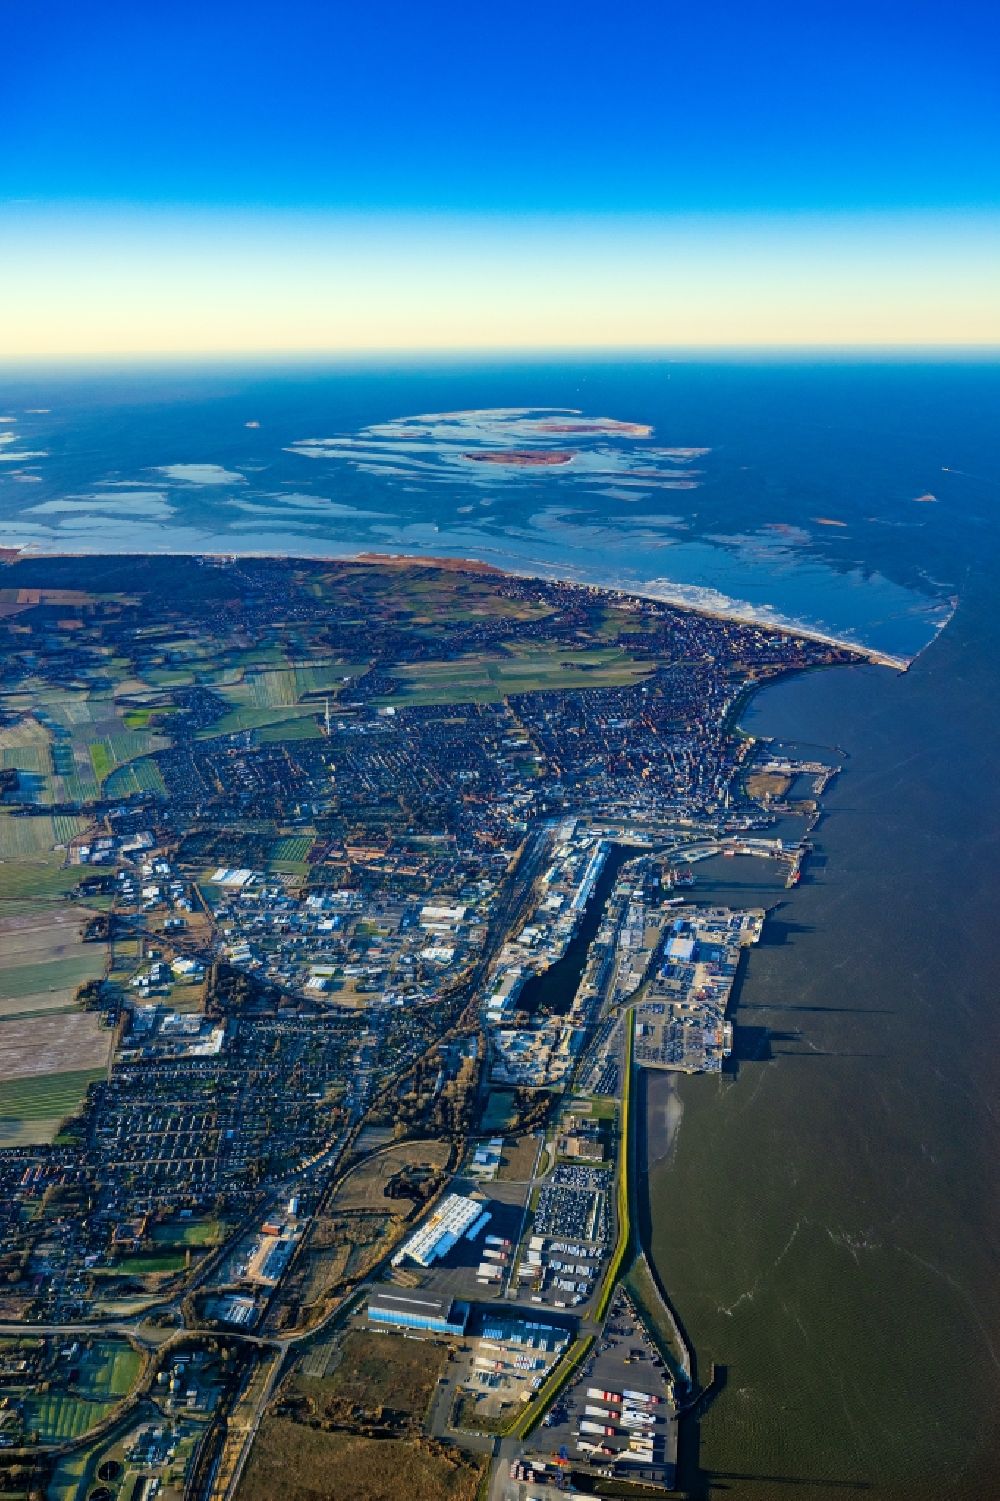 Luftaufnahme Cuxhaven - Küsten- Landschaft am Sandstrand der Nordsee in Cuxhaven im Bundesland Niedersachsen